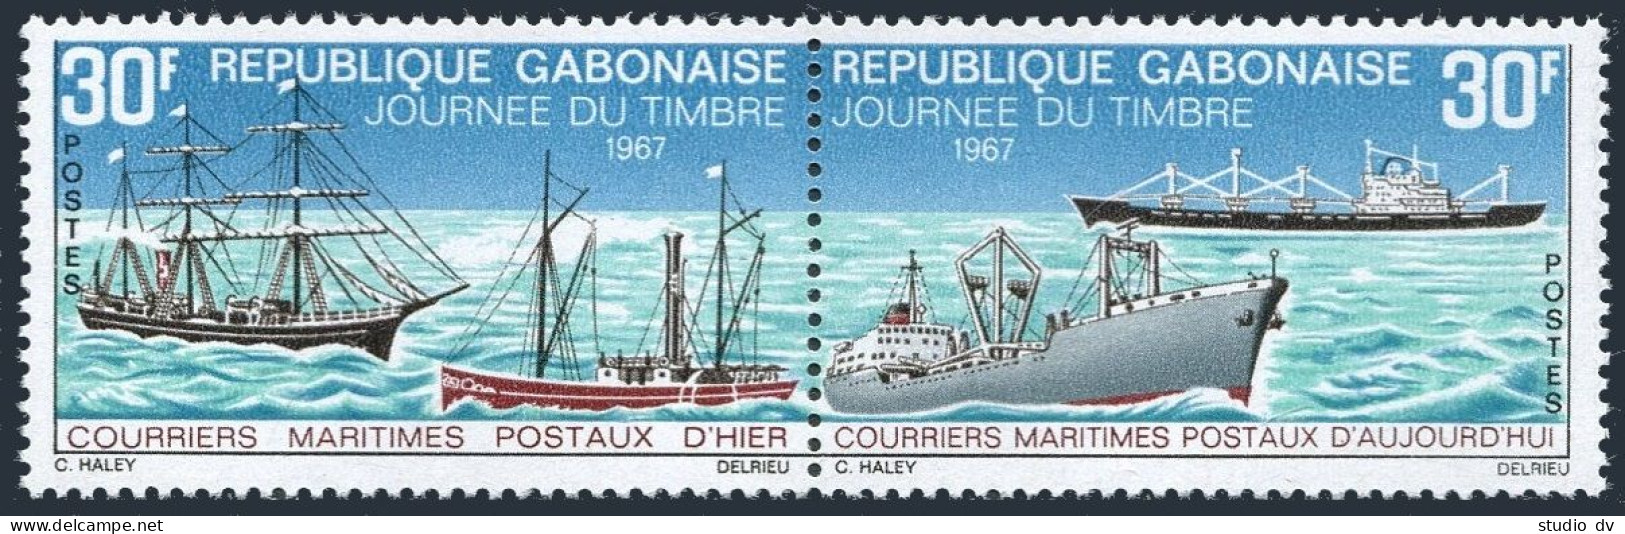 Gabon 221-222a Pair, MNH. Michel 294-295. 19th Century Mail Ships. 1967. - Gabon